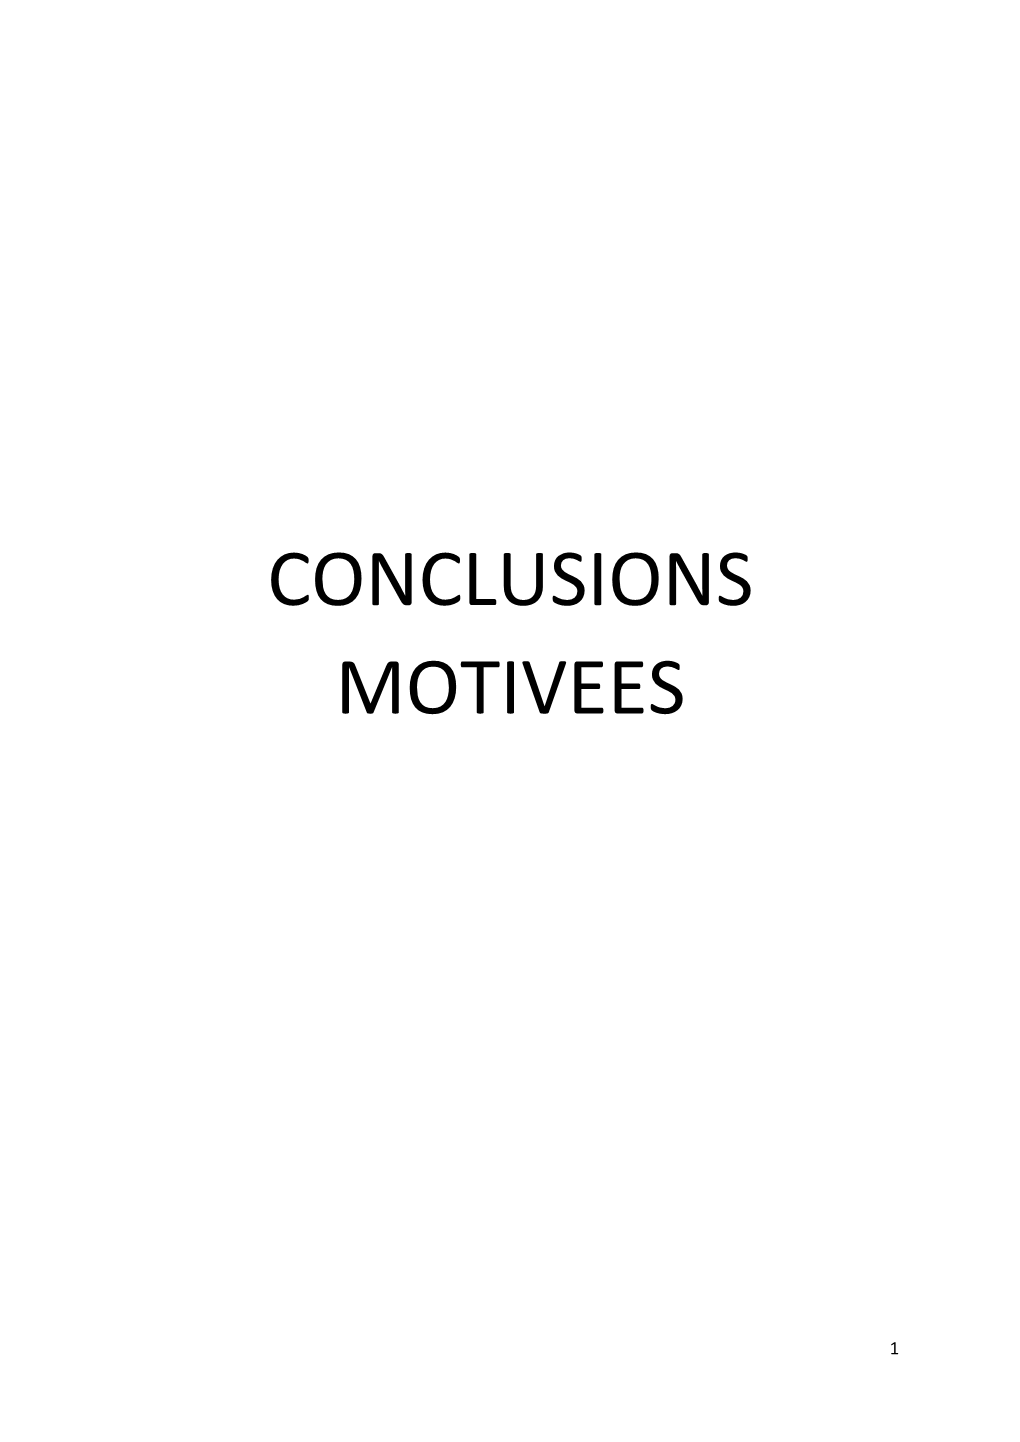 Conclusions Motivees